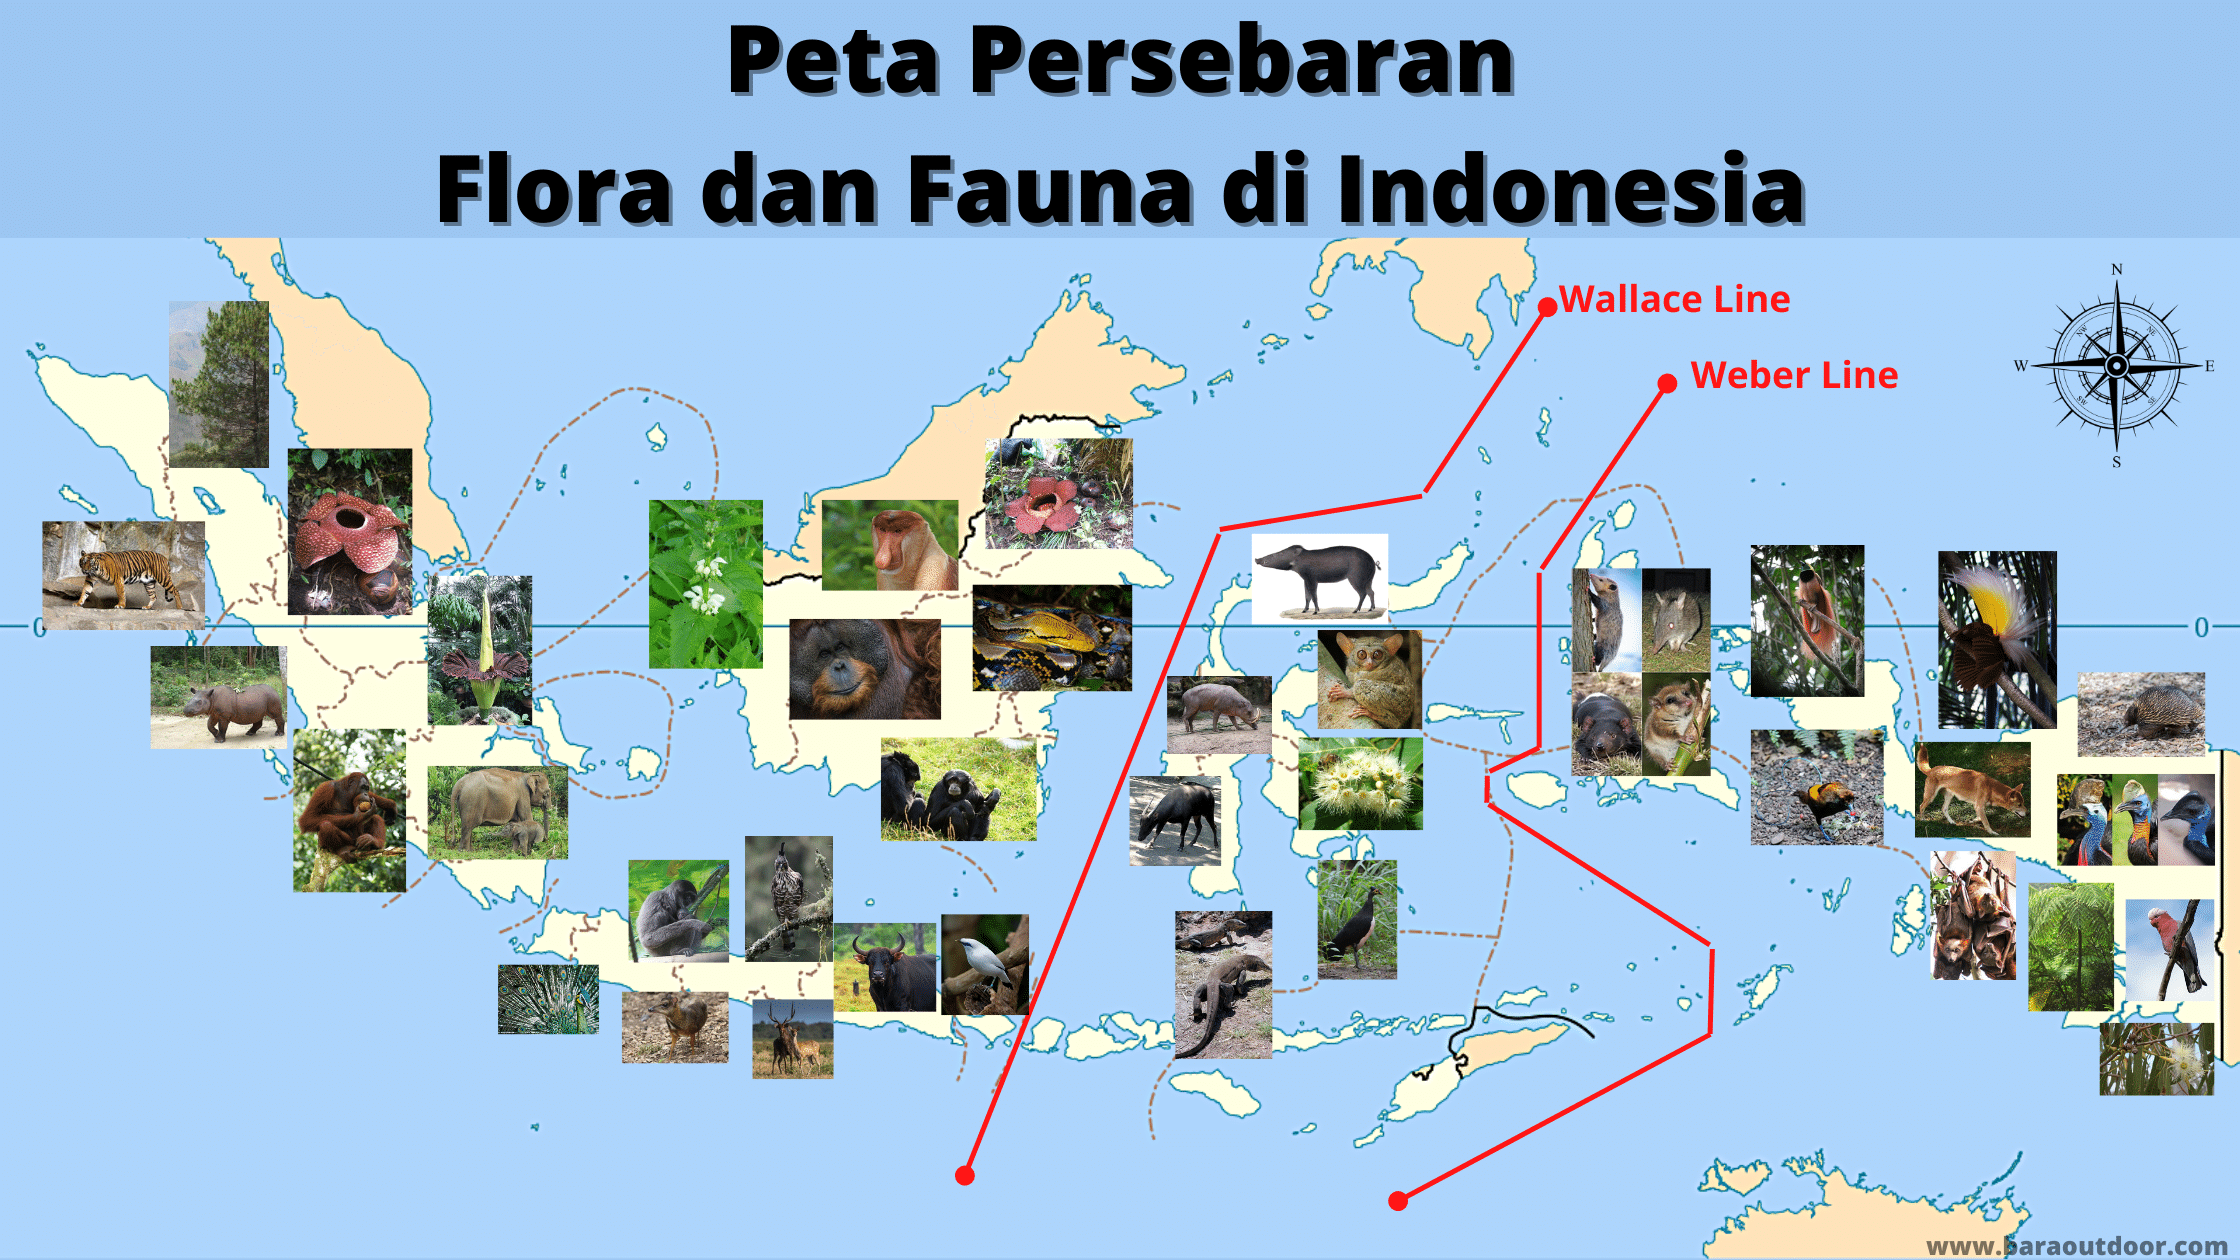 Peta Persebaran Flora dan Fauna di Indonesia